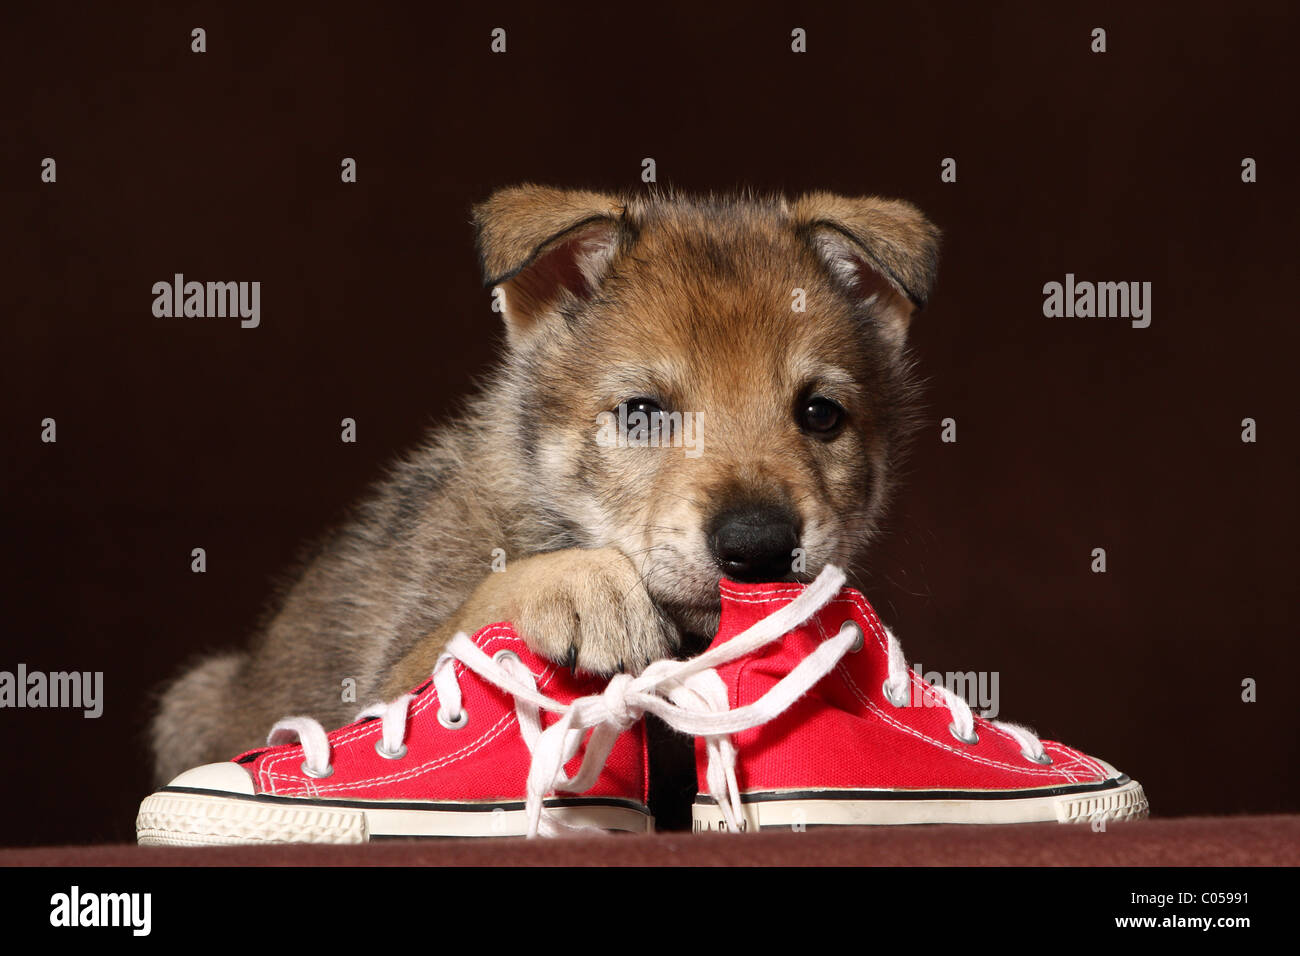 Perros con zapatos fotografías e imágenes de alta resolución - Página 3 -  Alamy